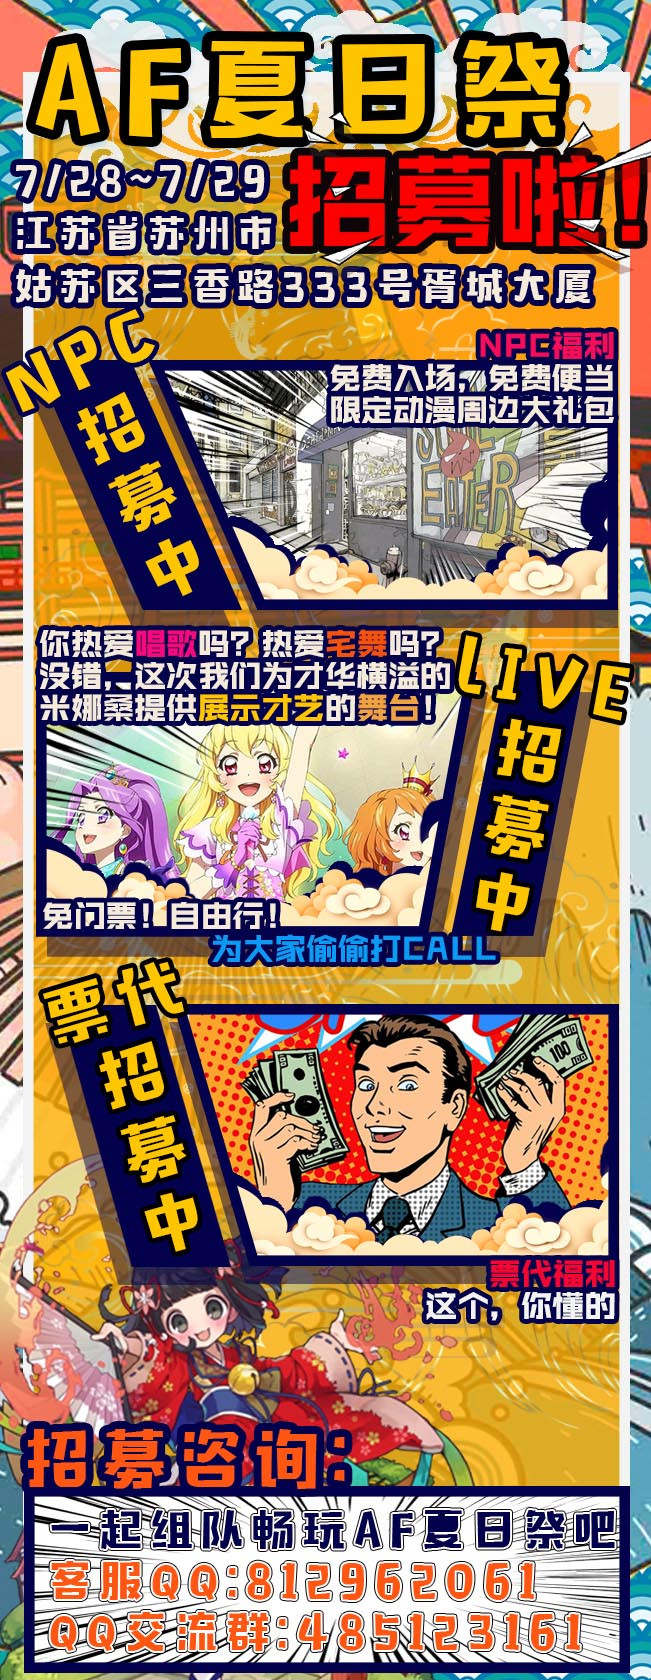 苏州AnimeFeast夏日祭 no.6-C3动漫网